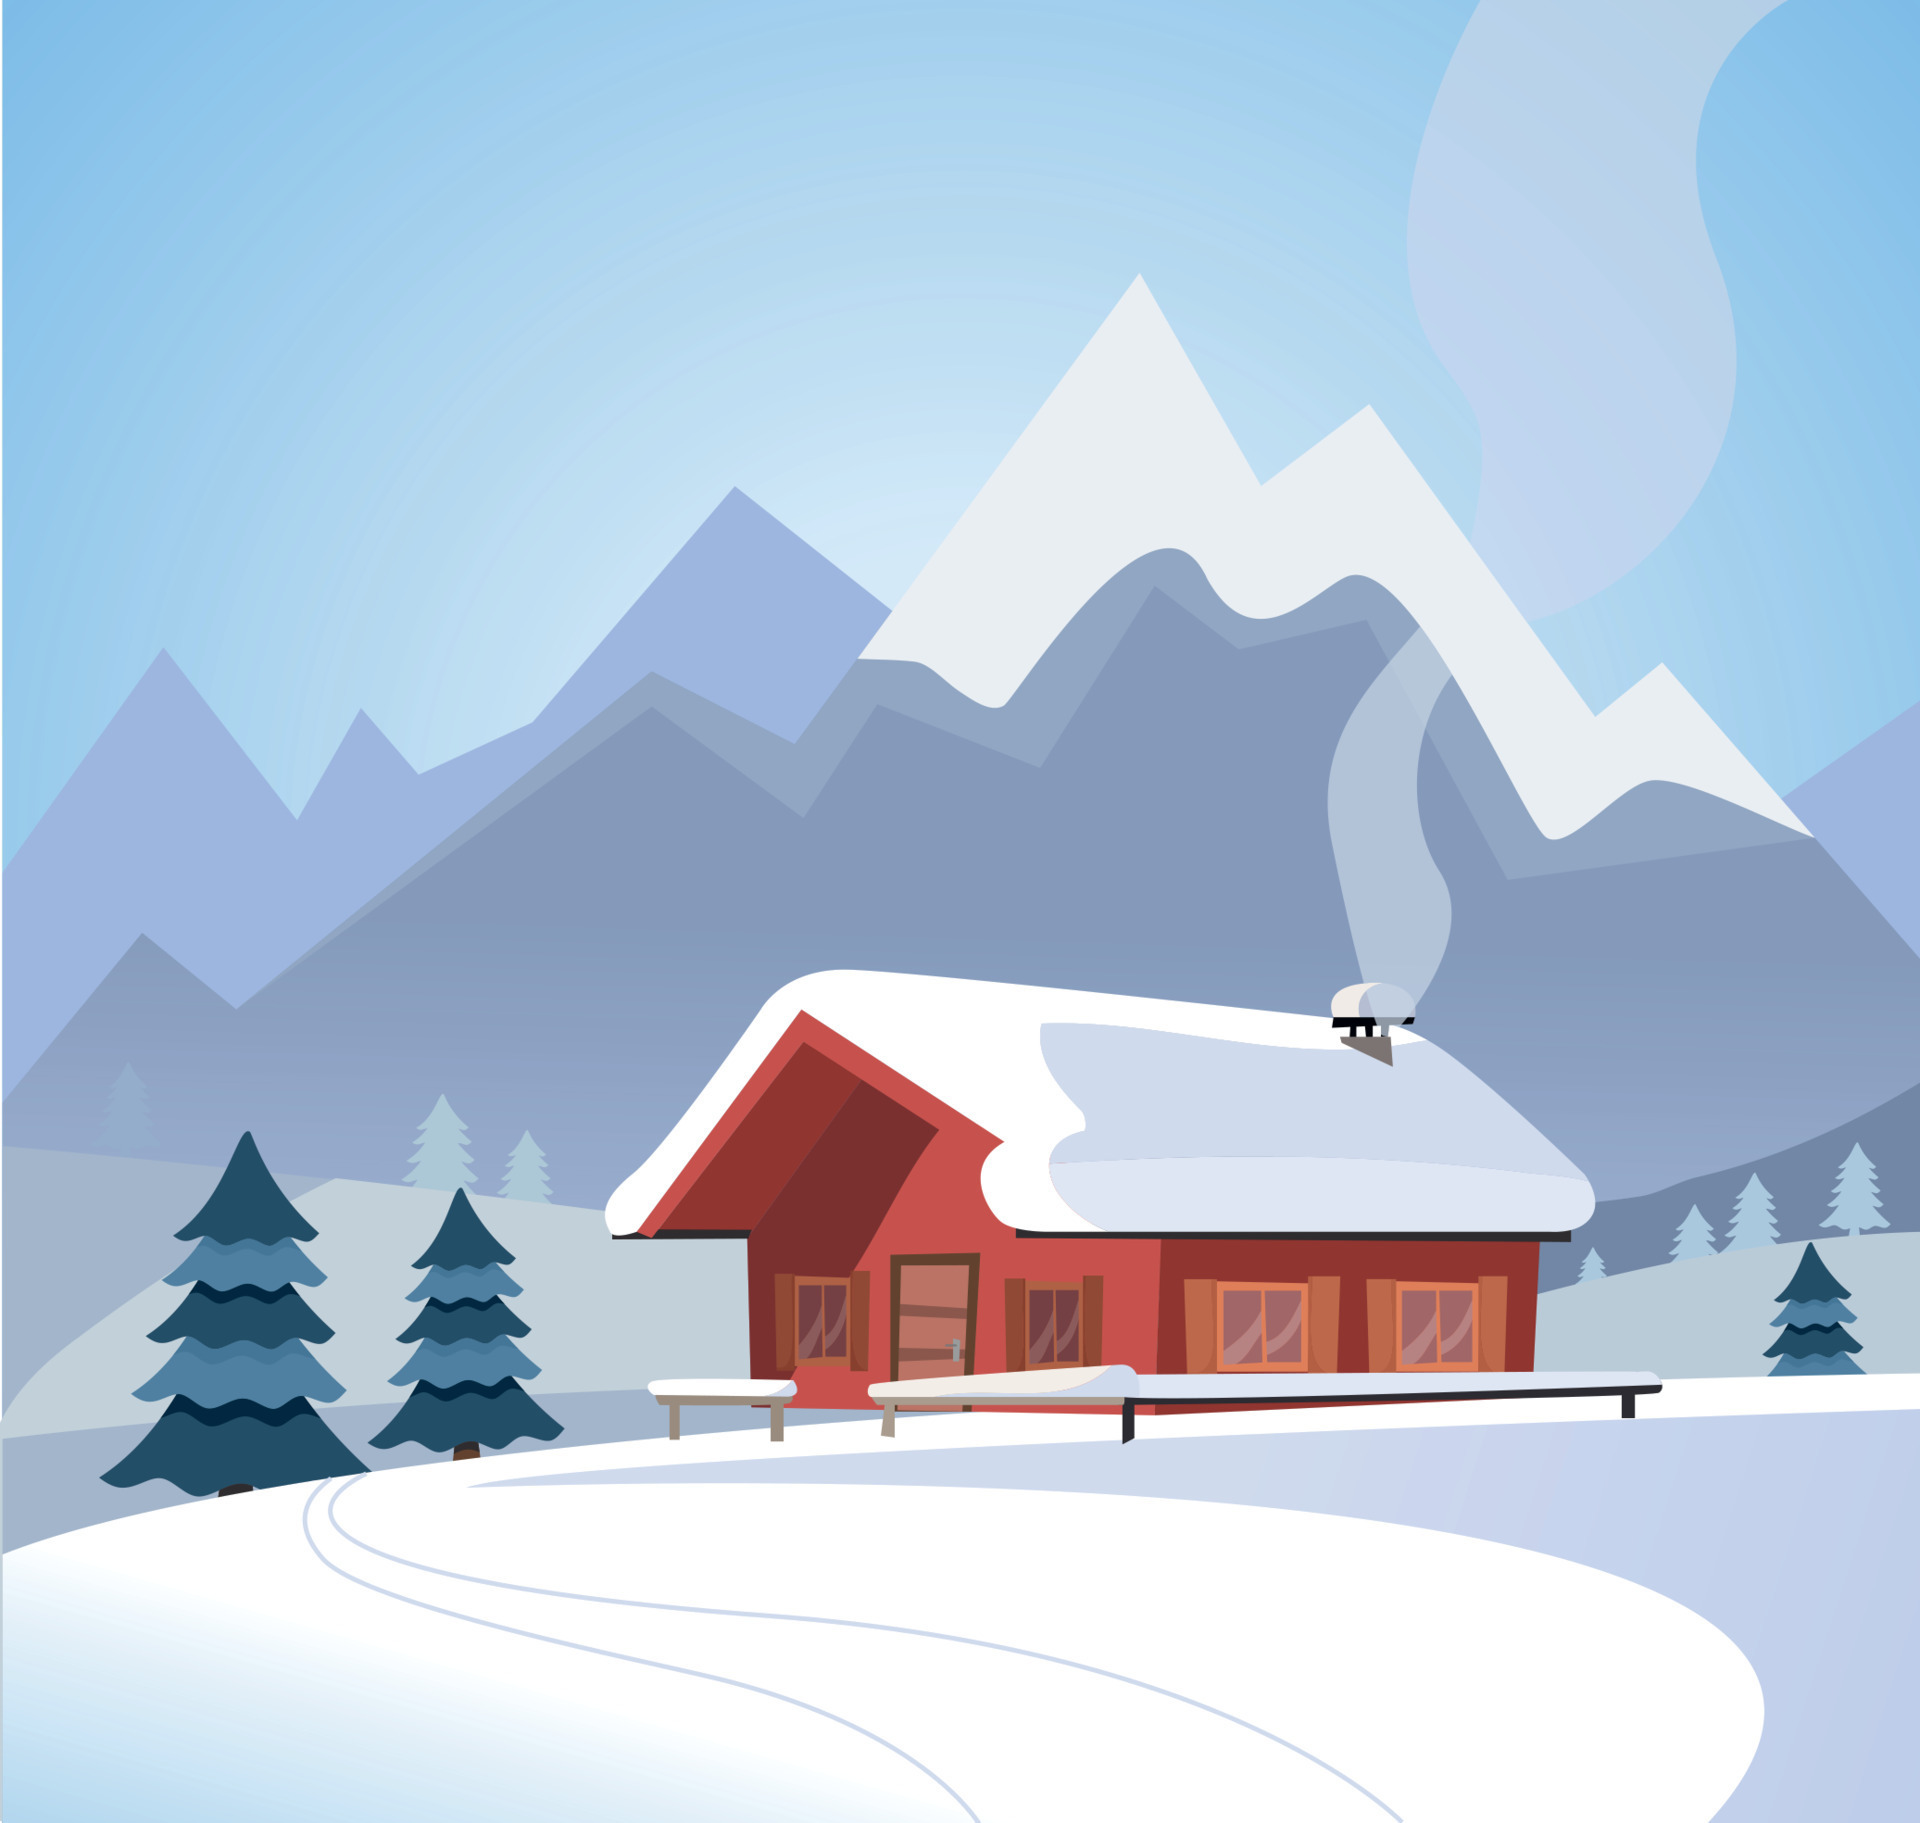 paisaje nevado de invierno con montañas y casa de campo de troncos de  madera, piceas, abetos, naturaleza nevada, clima soleado. tarjeta de  temporada navideña. ilustración de vector de estilo de dibujos animados